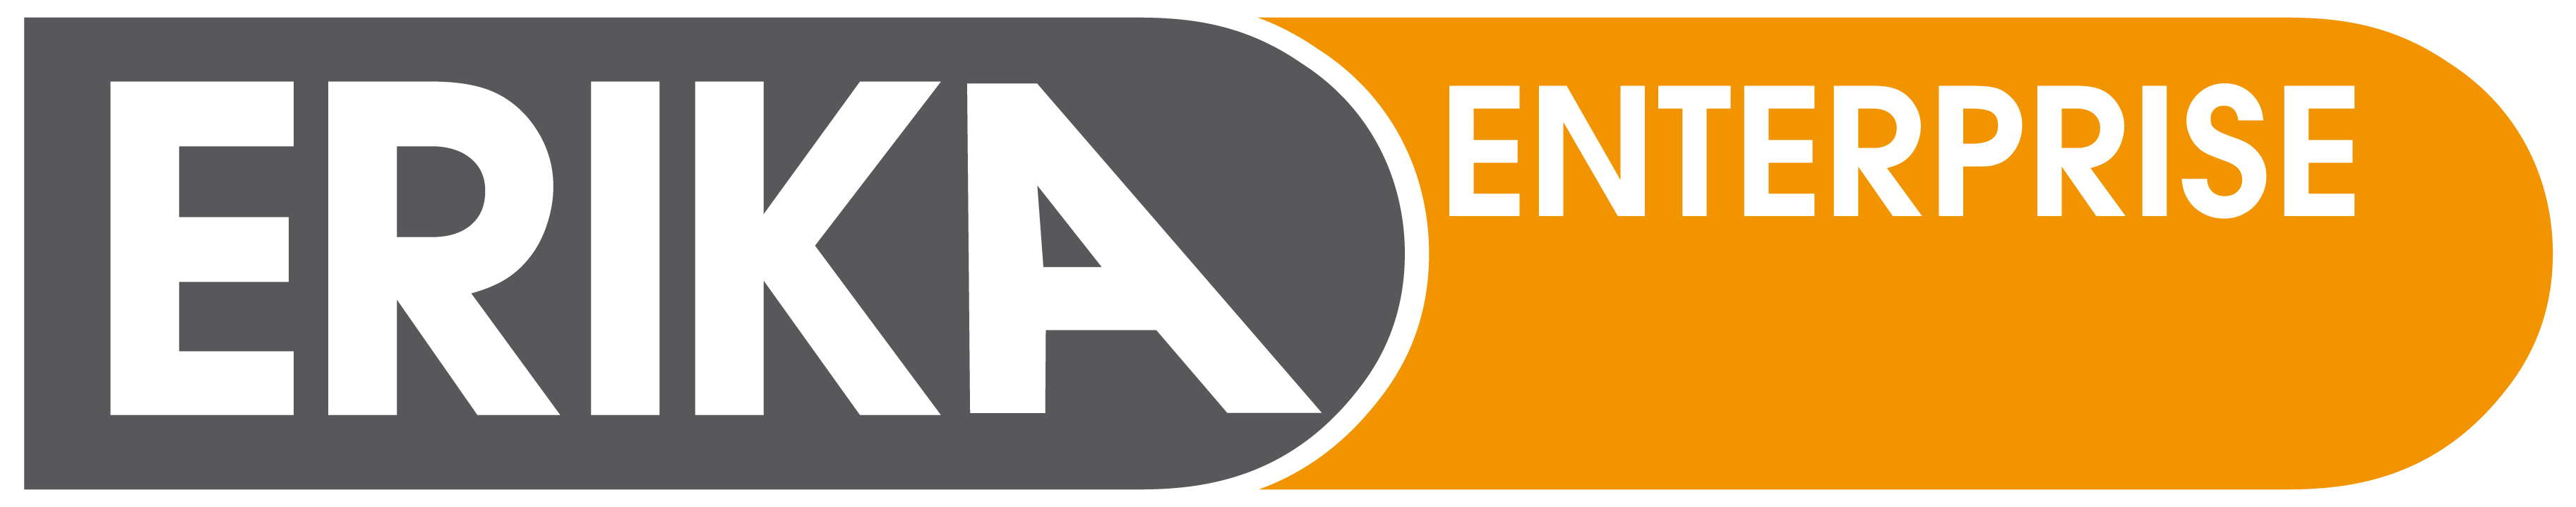 ERIKA logo